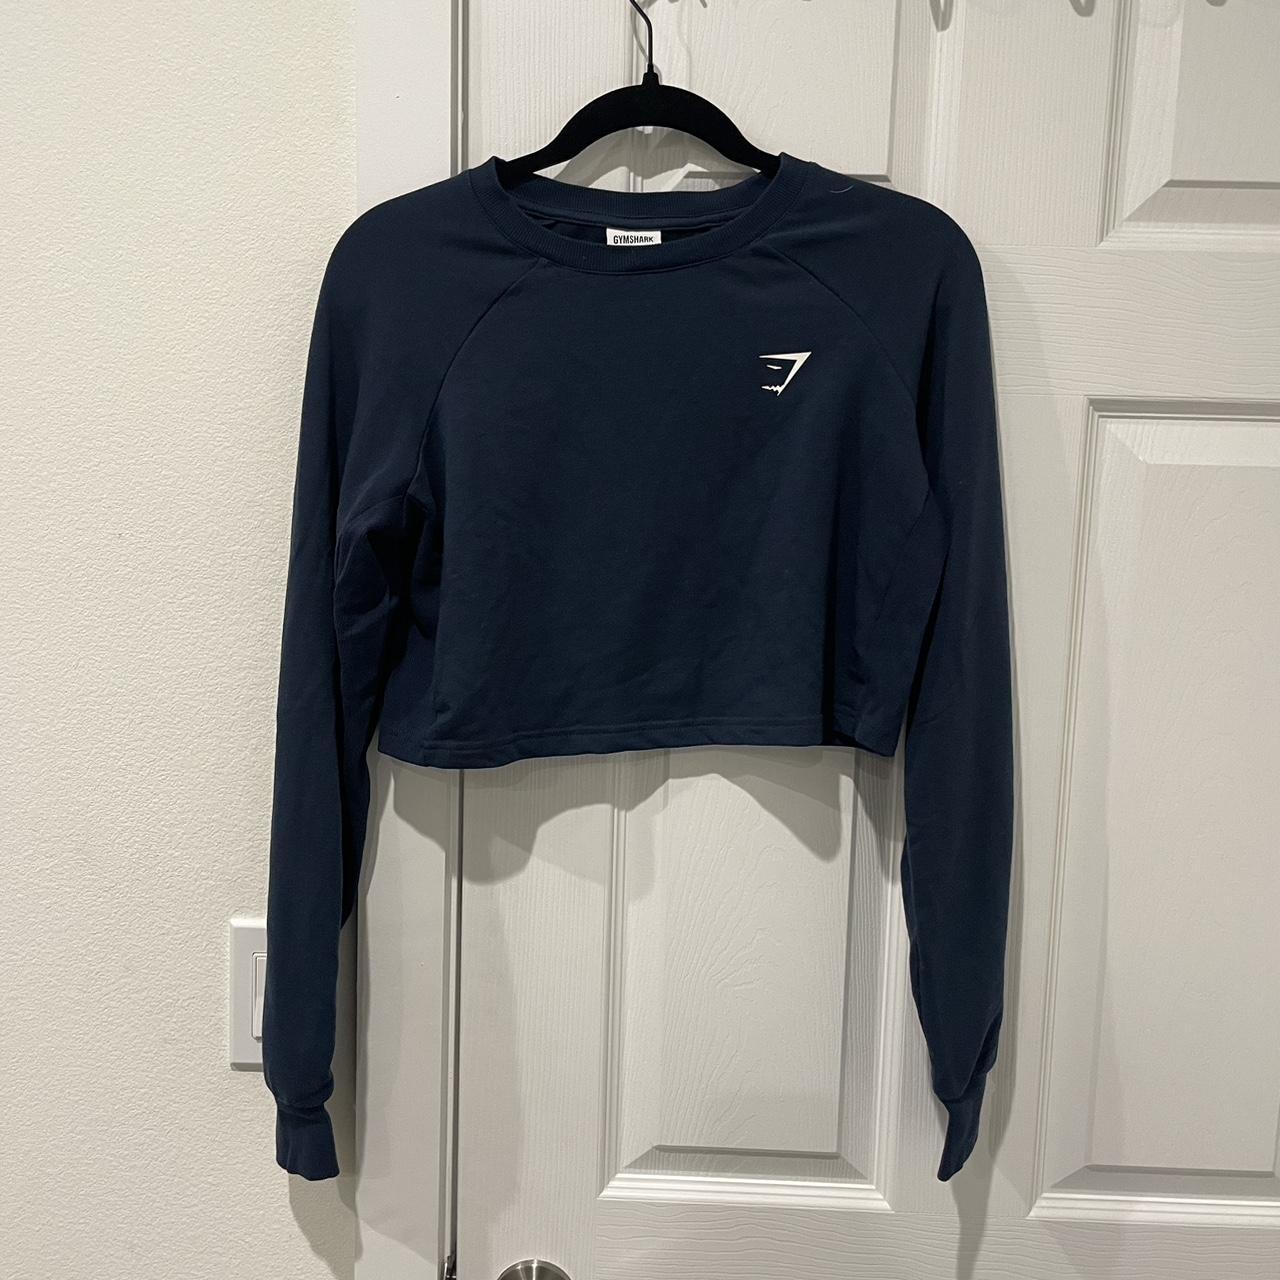 Cropped gymshark sweatshirt - Depop